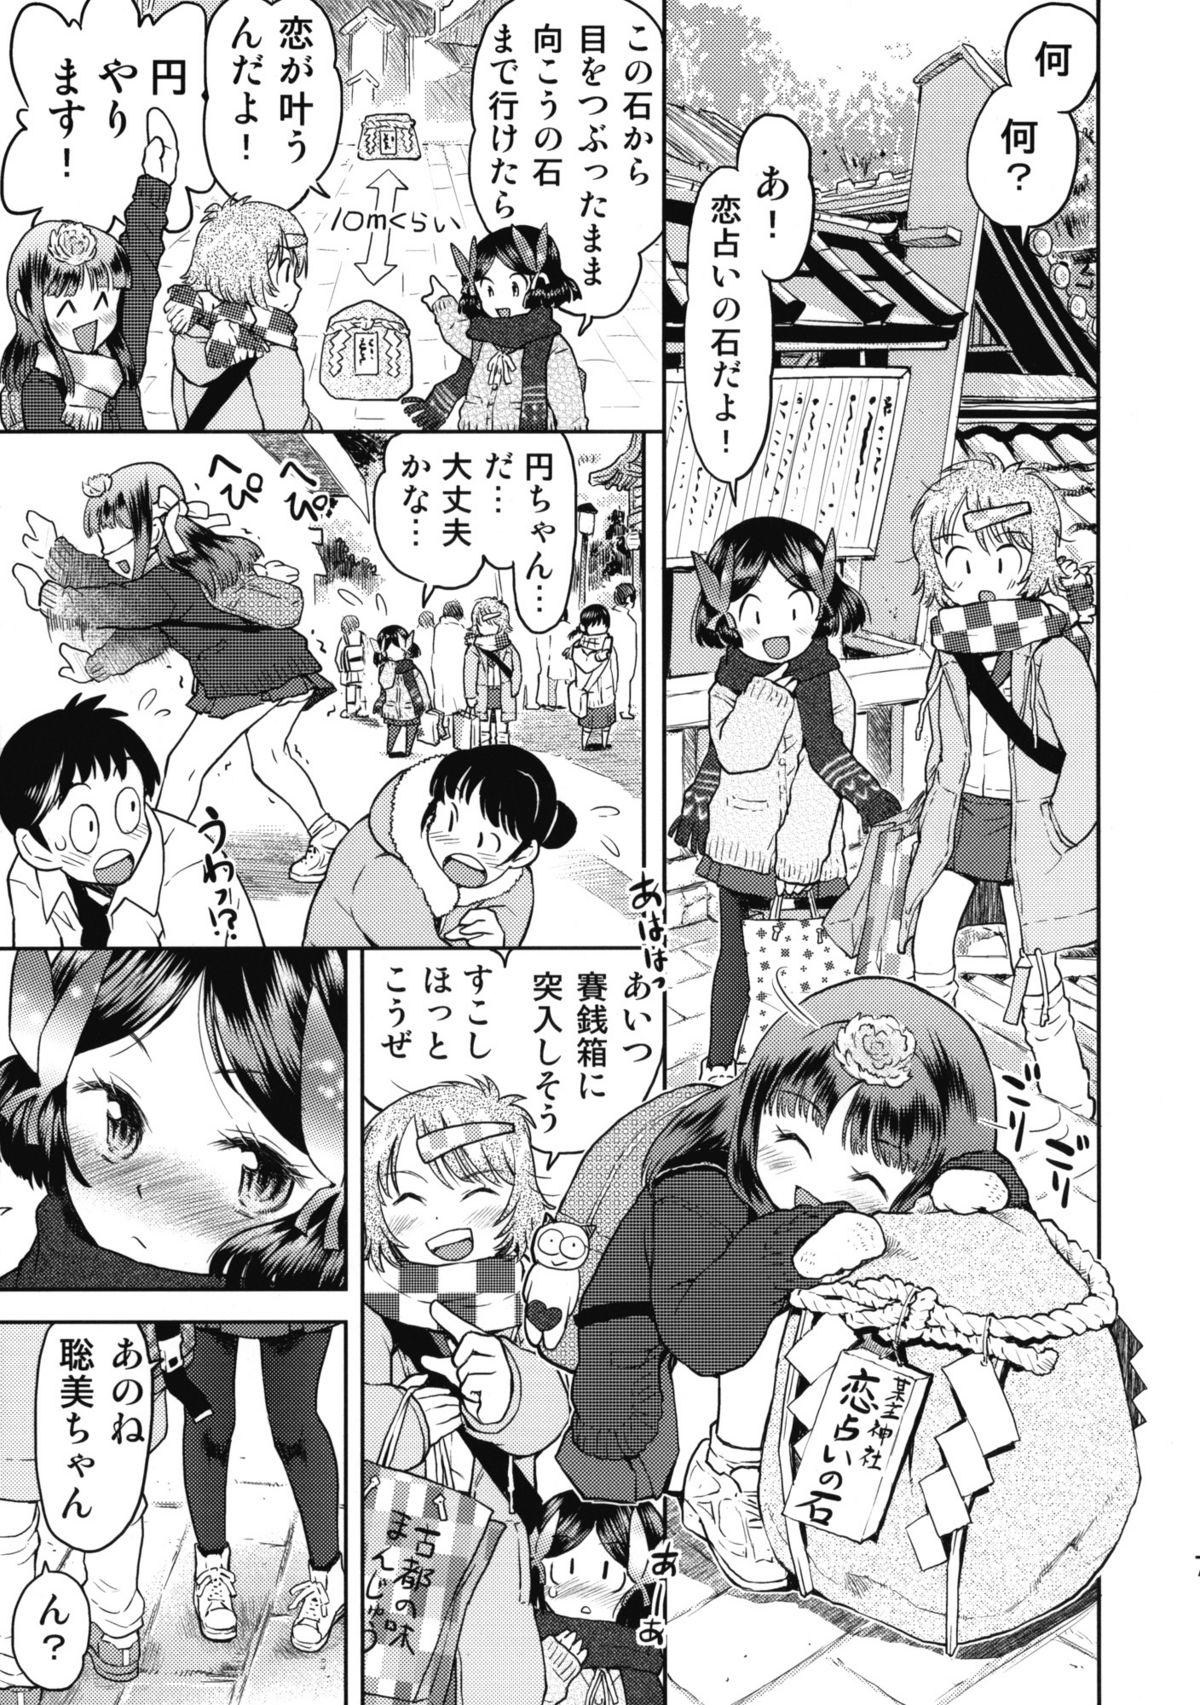 Eating Shuugaku Ryokou no Shiori Futsukame Girl Girl - Page 6